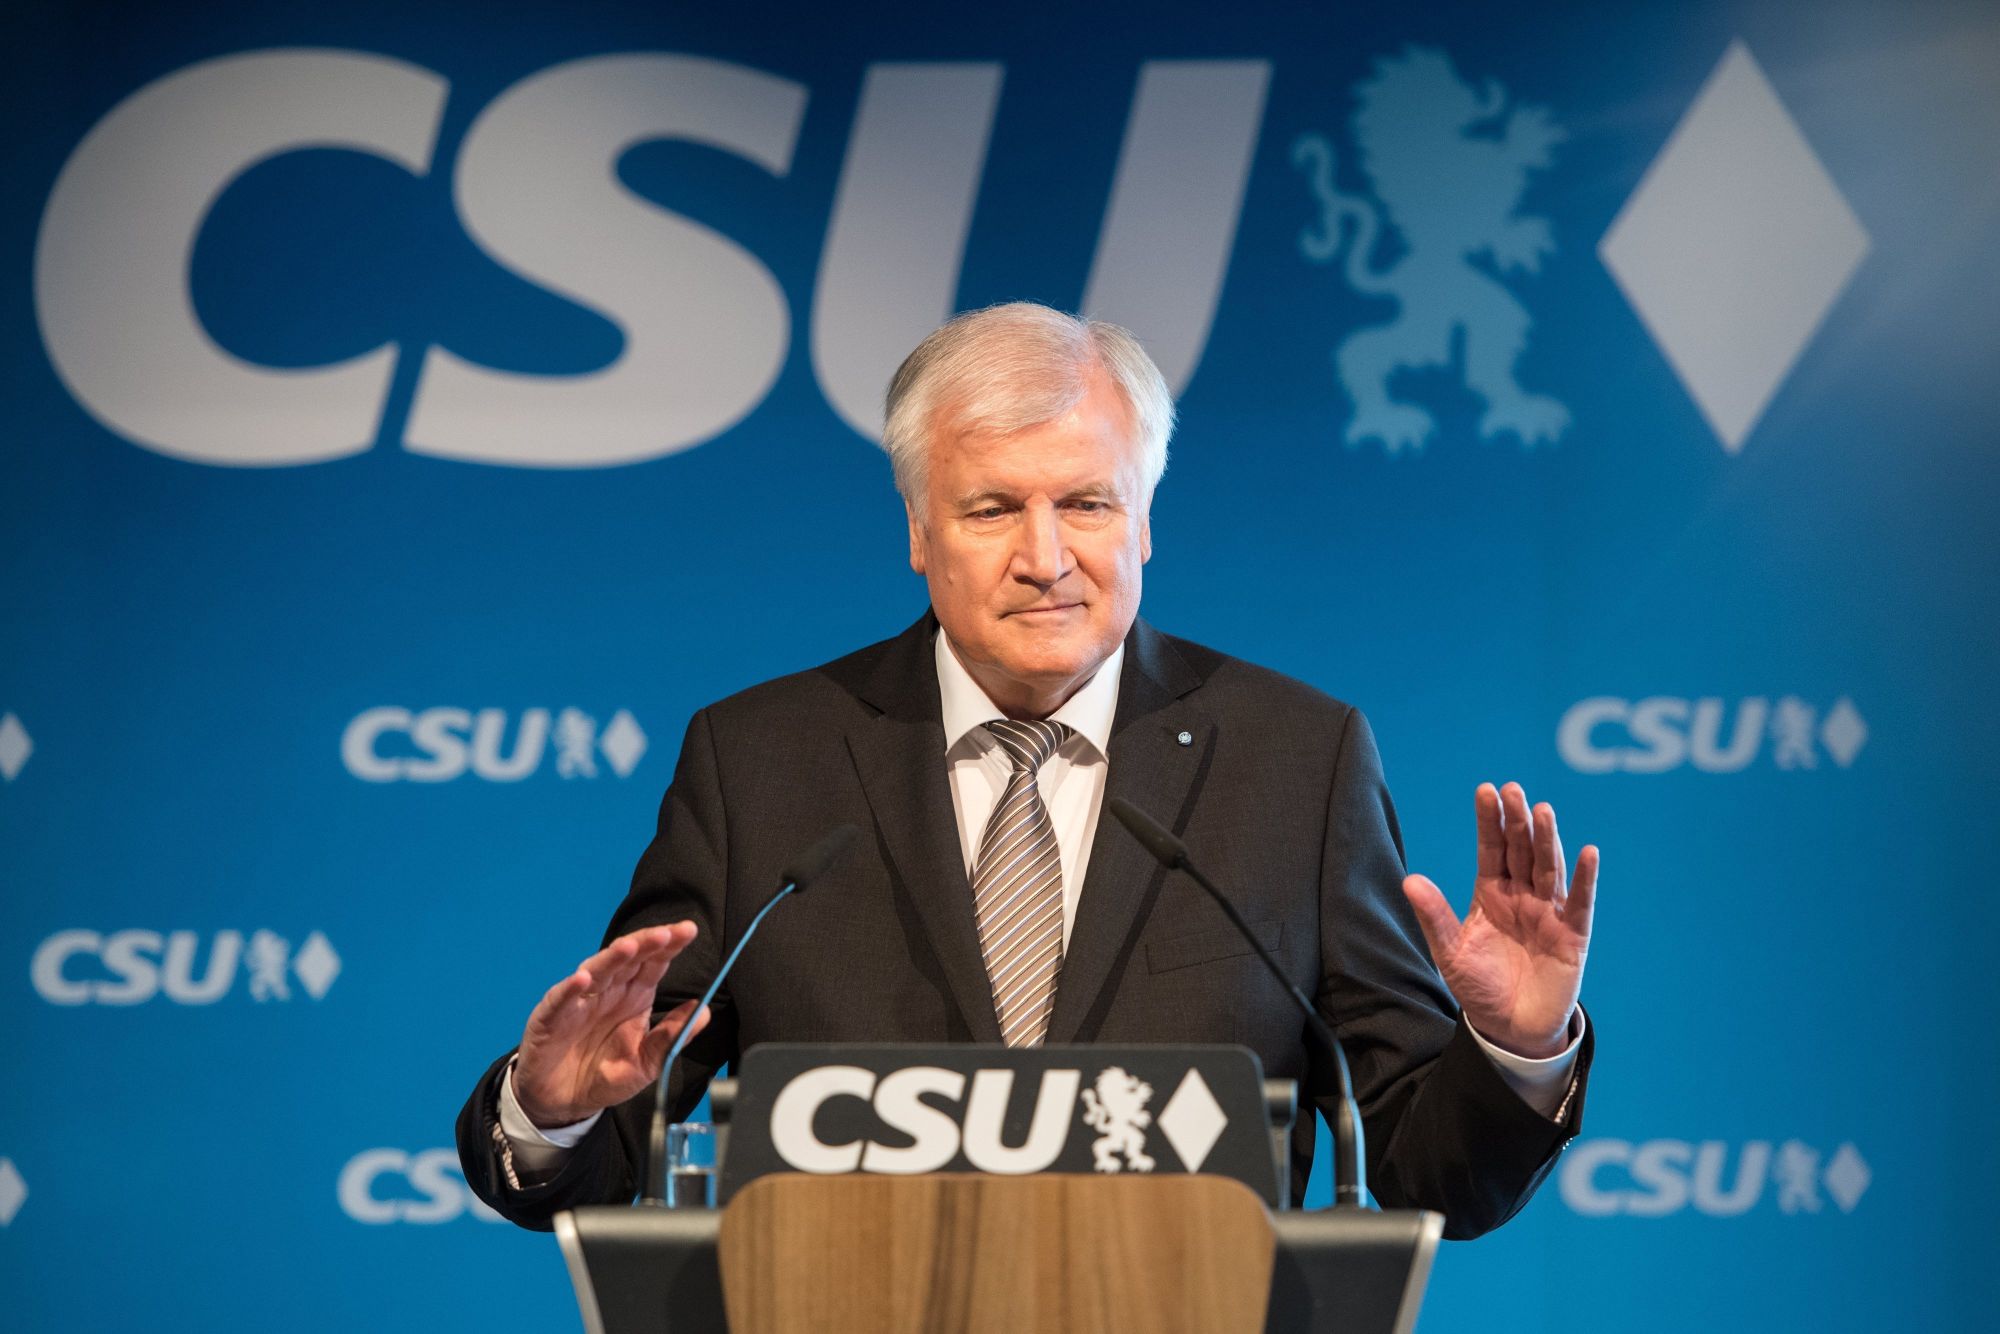 Horst Seehofer bajor tartományi miniszterelnök, a Keresztényszociális Unió (CSU) elnöke sajtótájékoztatót tart a párt müncheni székházában 2018. március 5-én, egy nappal azután, hogy a Német Szociáldemokrata Párt (SPD) kétharmados többséggel jóváhagyta a német Kereszténydemokrata Unióval (CDU) és CSU-val kidolgozott koalíciós szerződést. (MTI/EPA/Lennart Preiss)